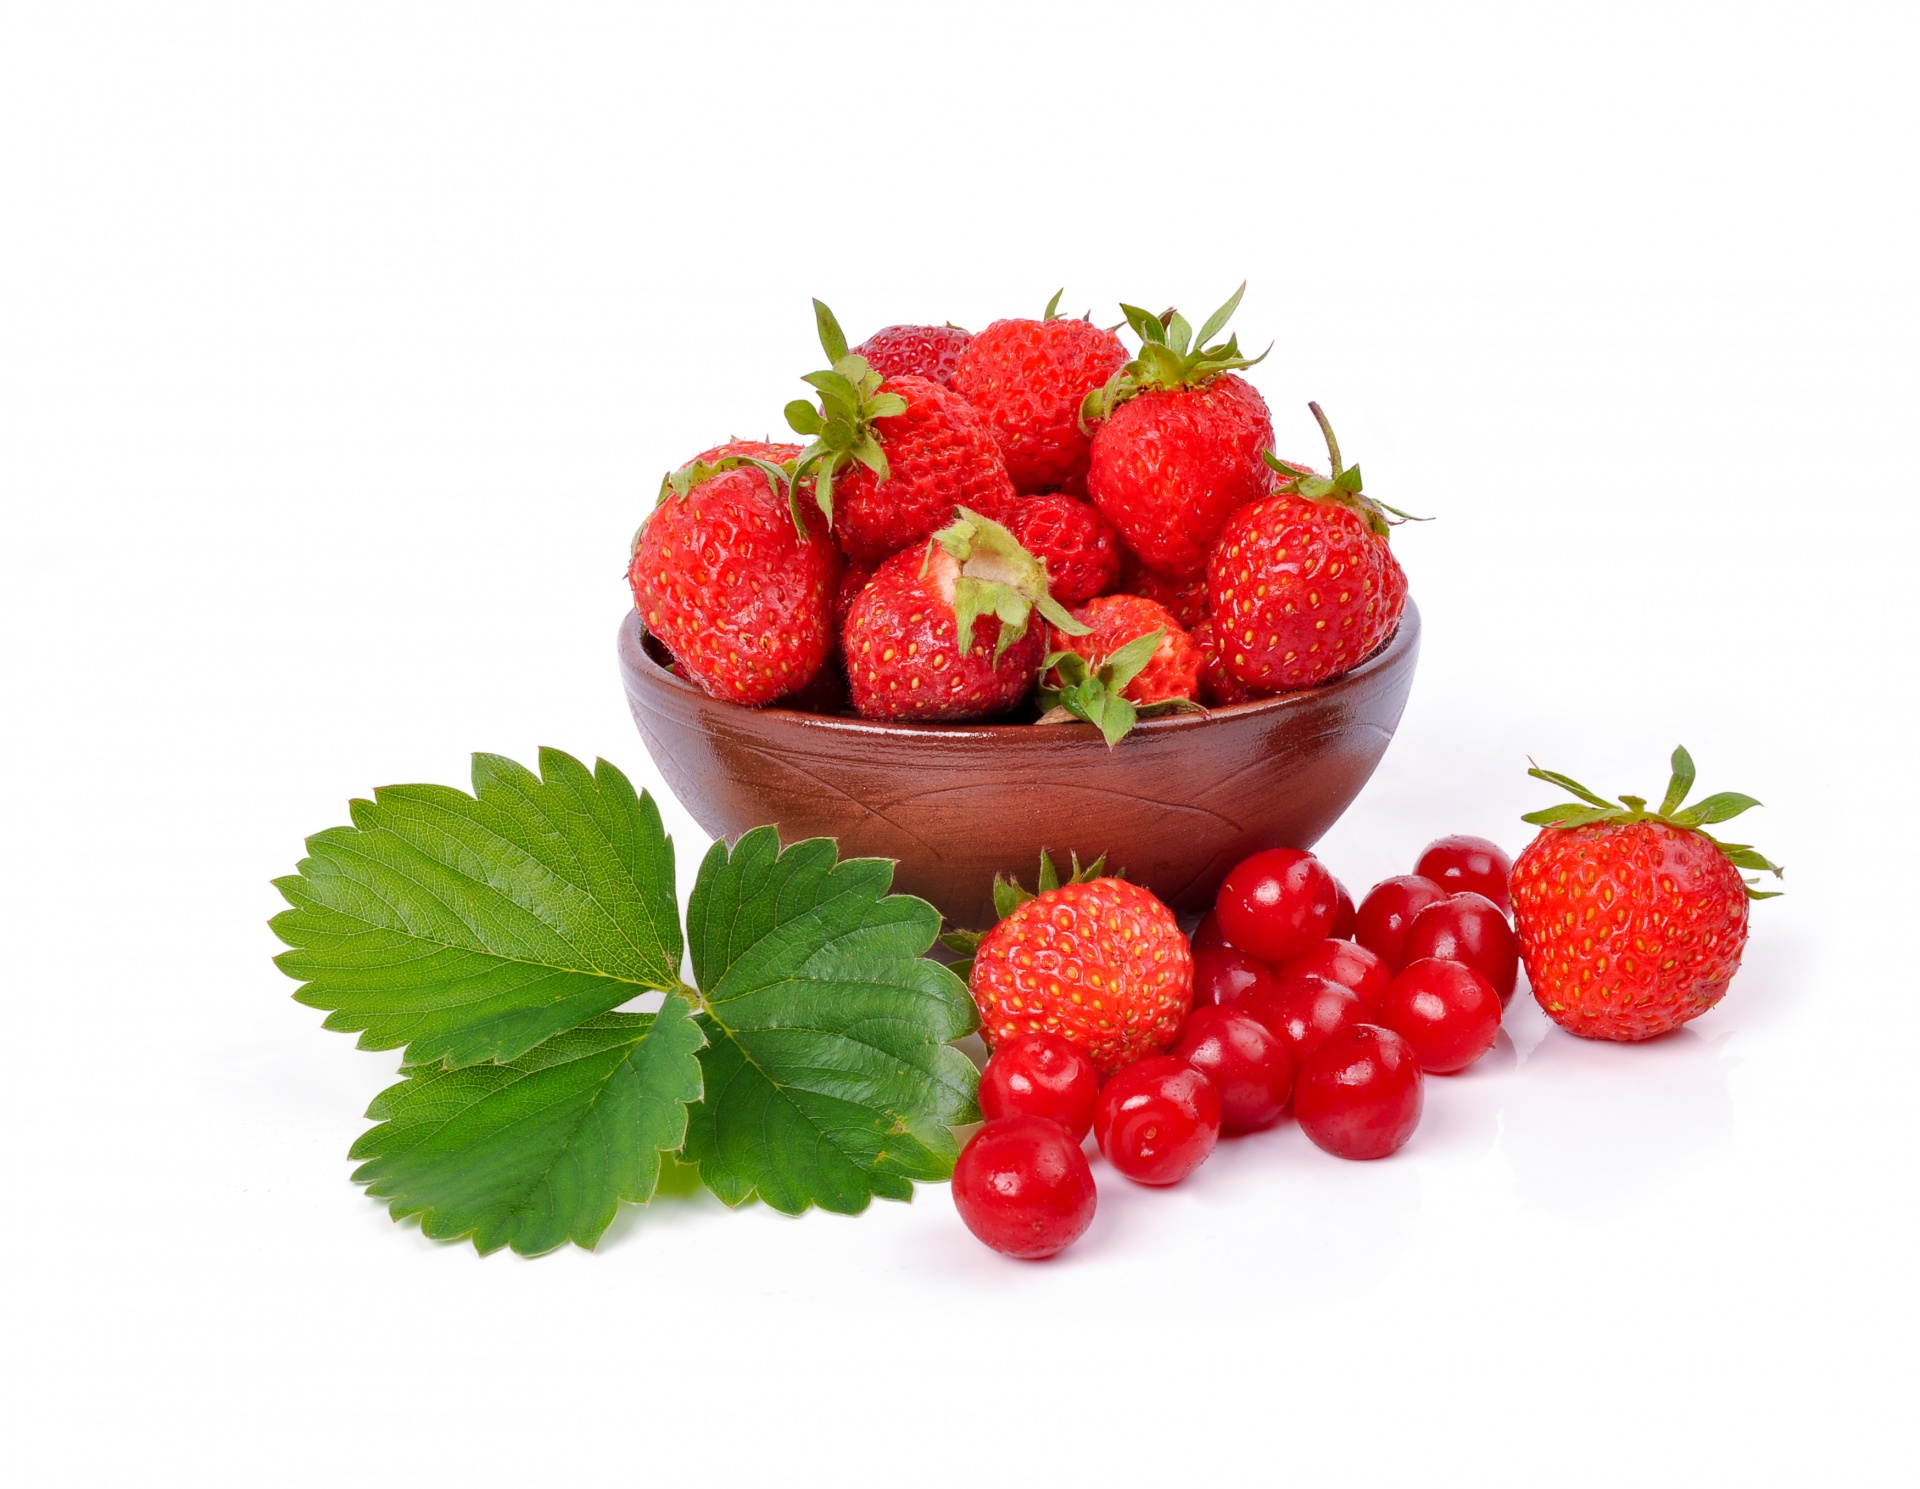 Strawberries And Cherries